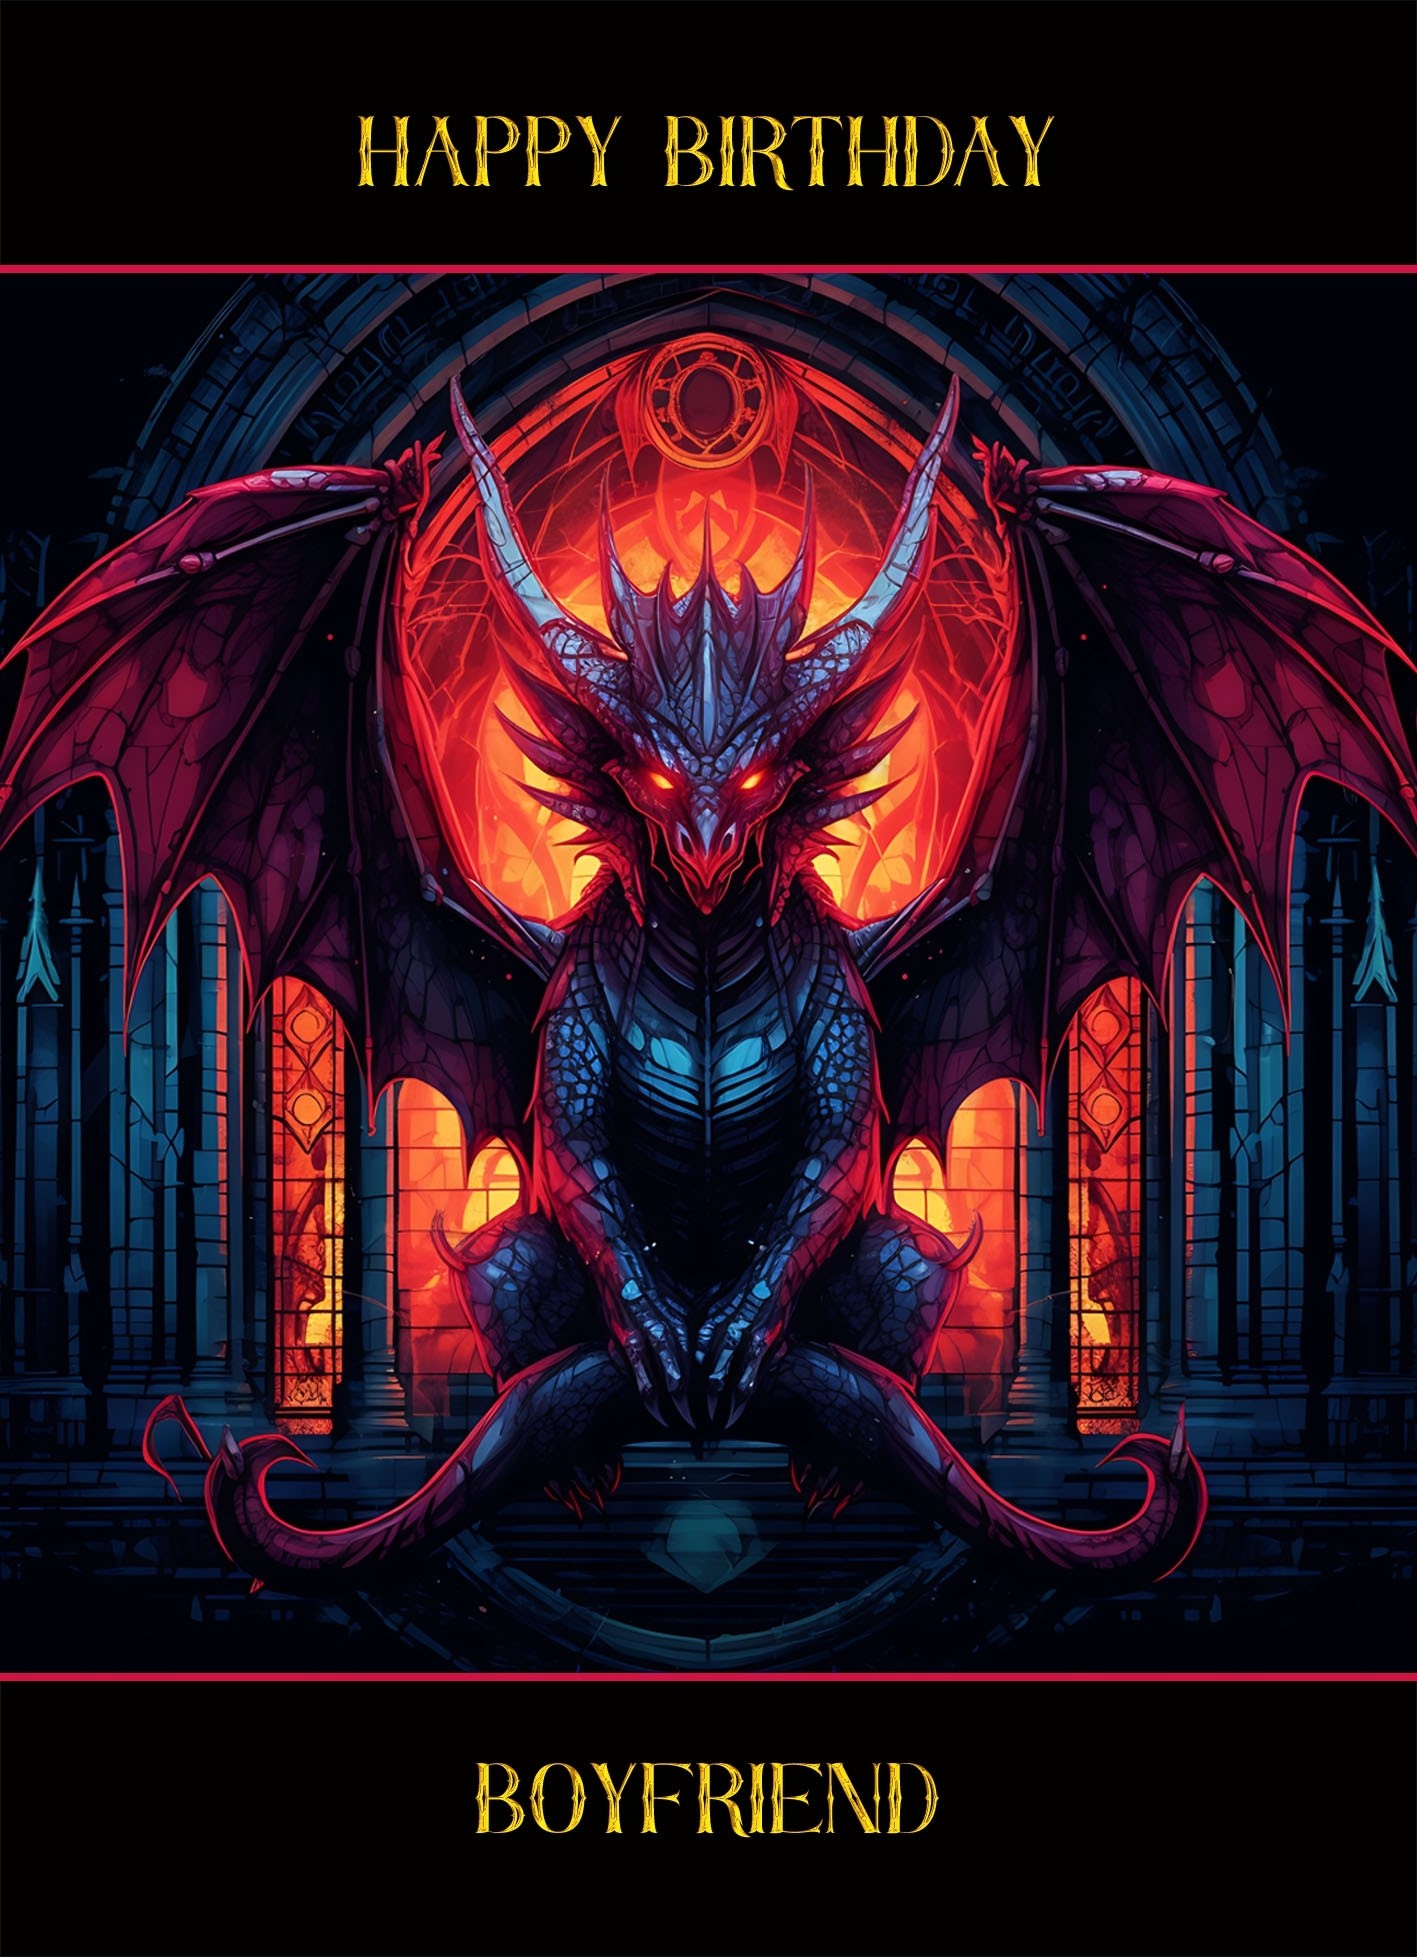 Gothic Fantasy Dragon Birthday Card For Boyfriend (Design 3)